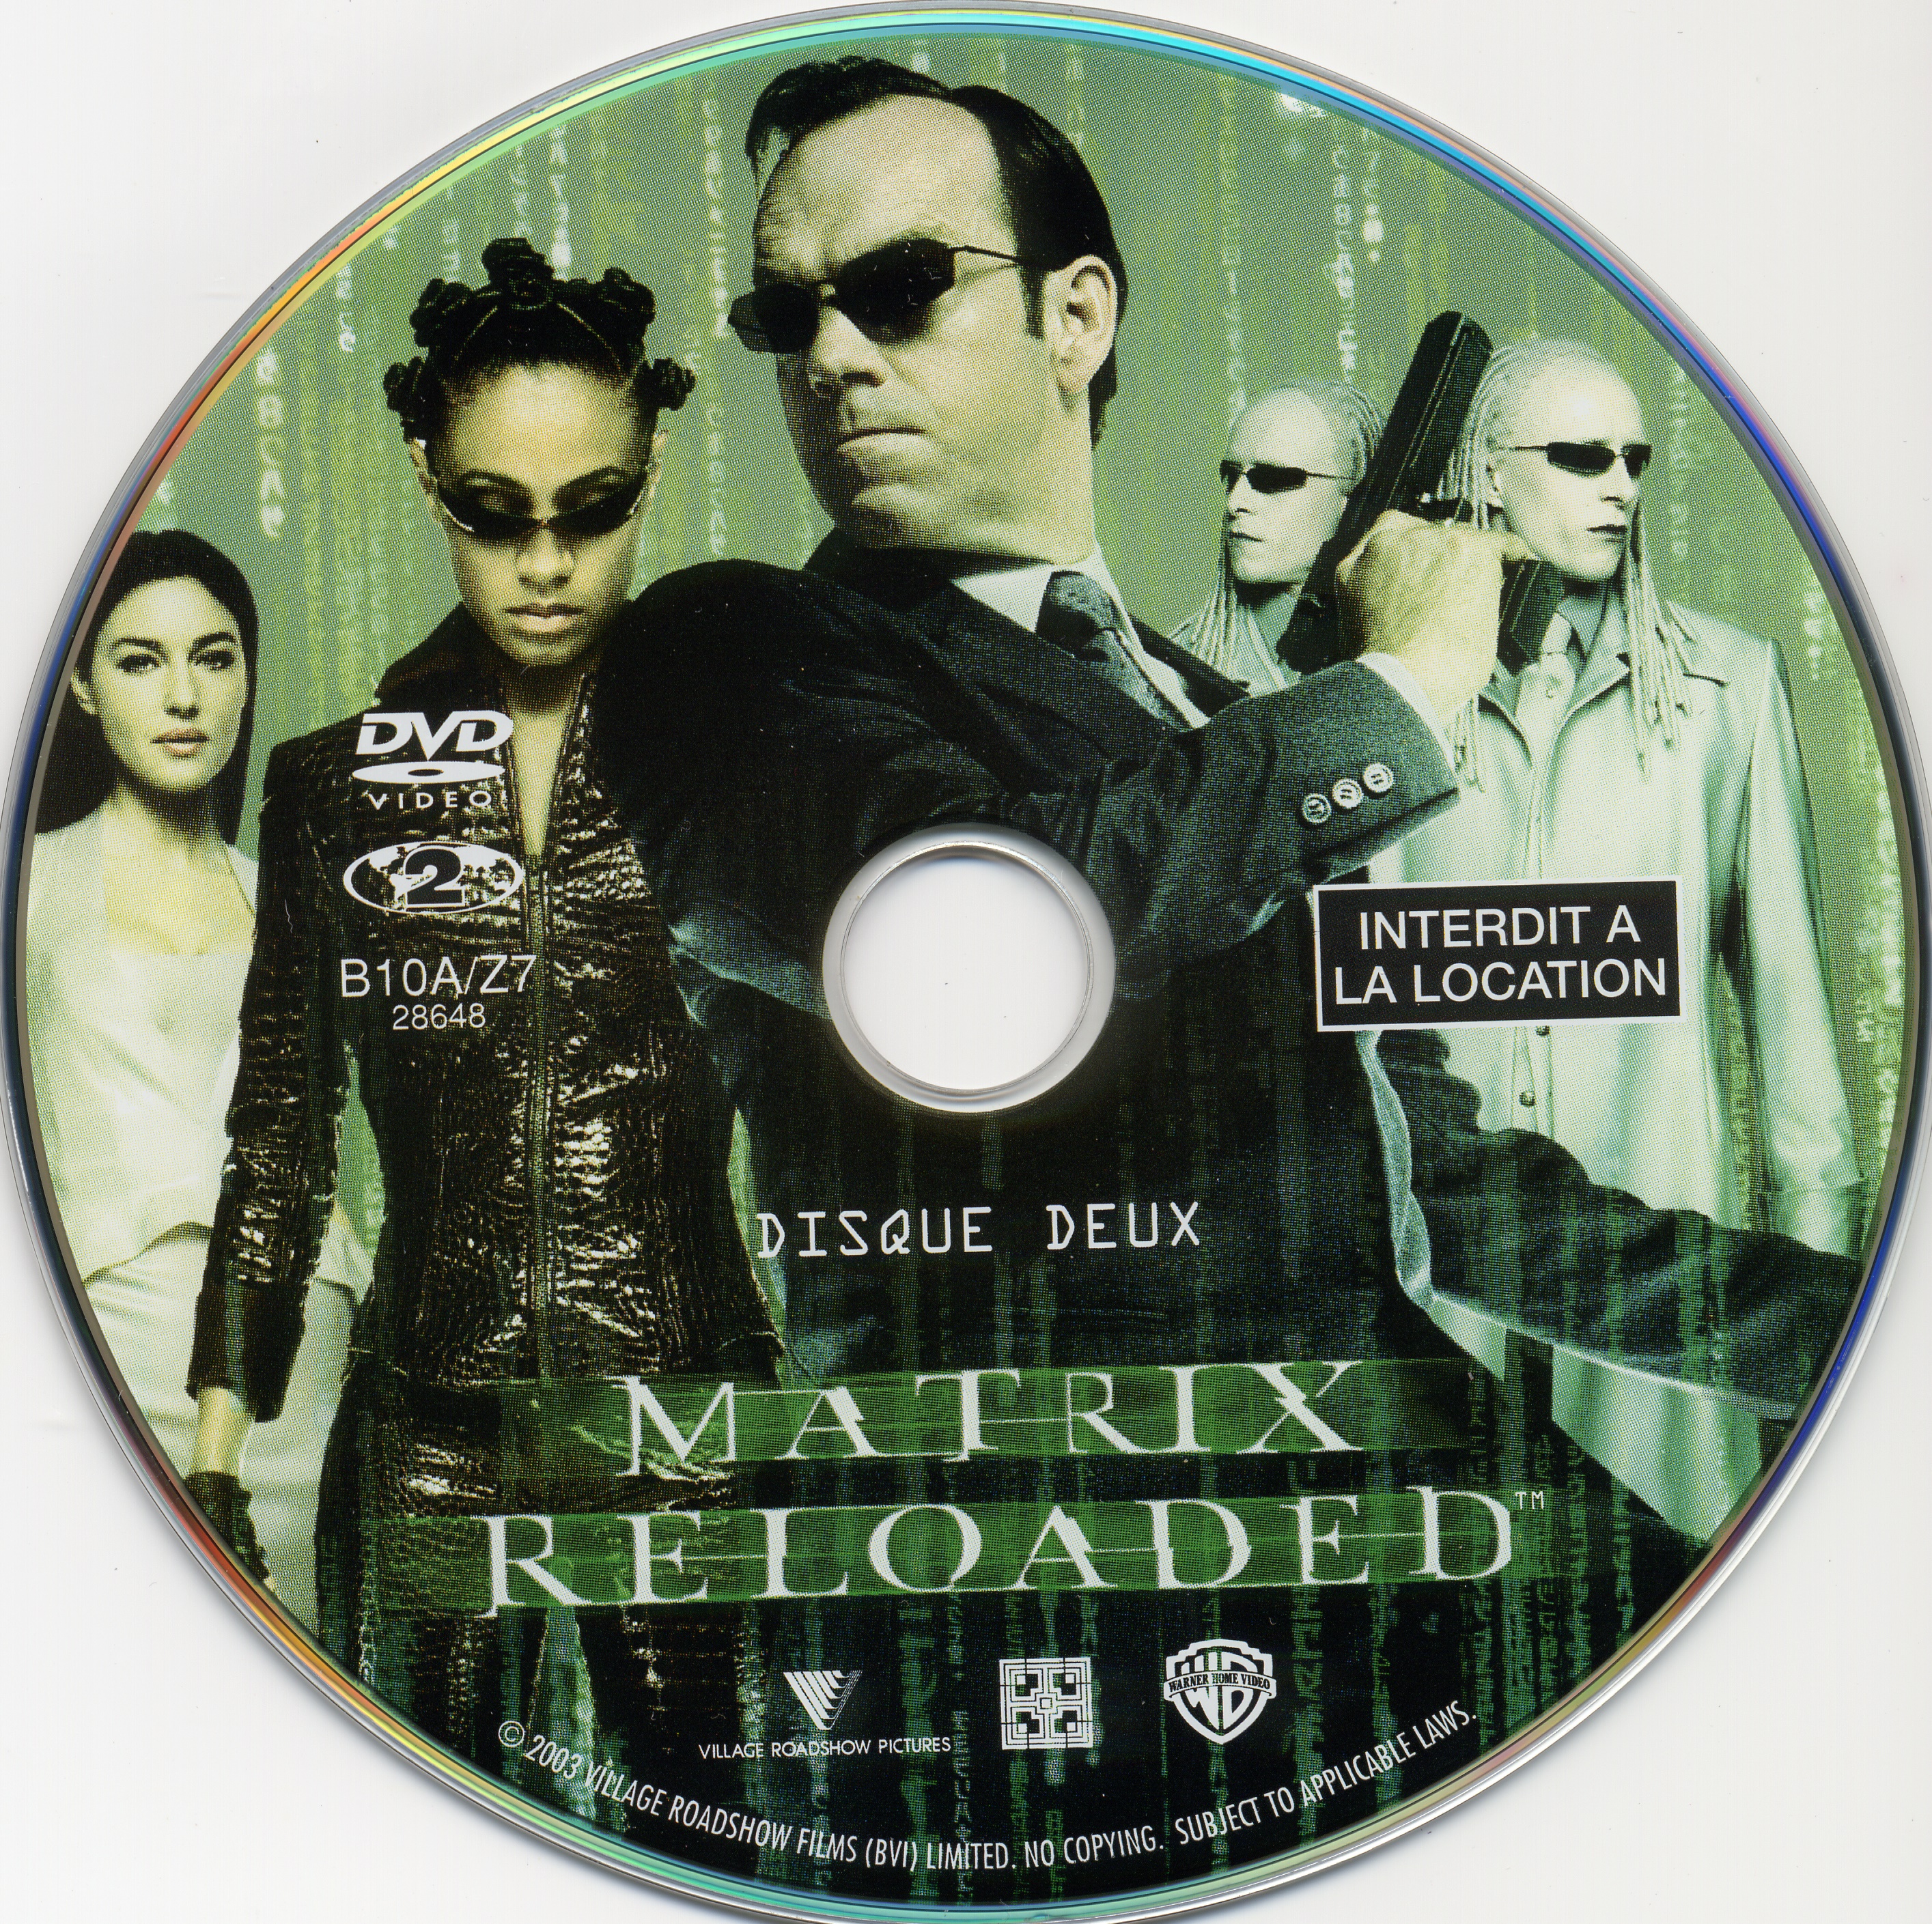 Matrix reloaded DISC 2